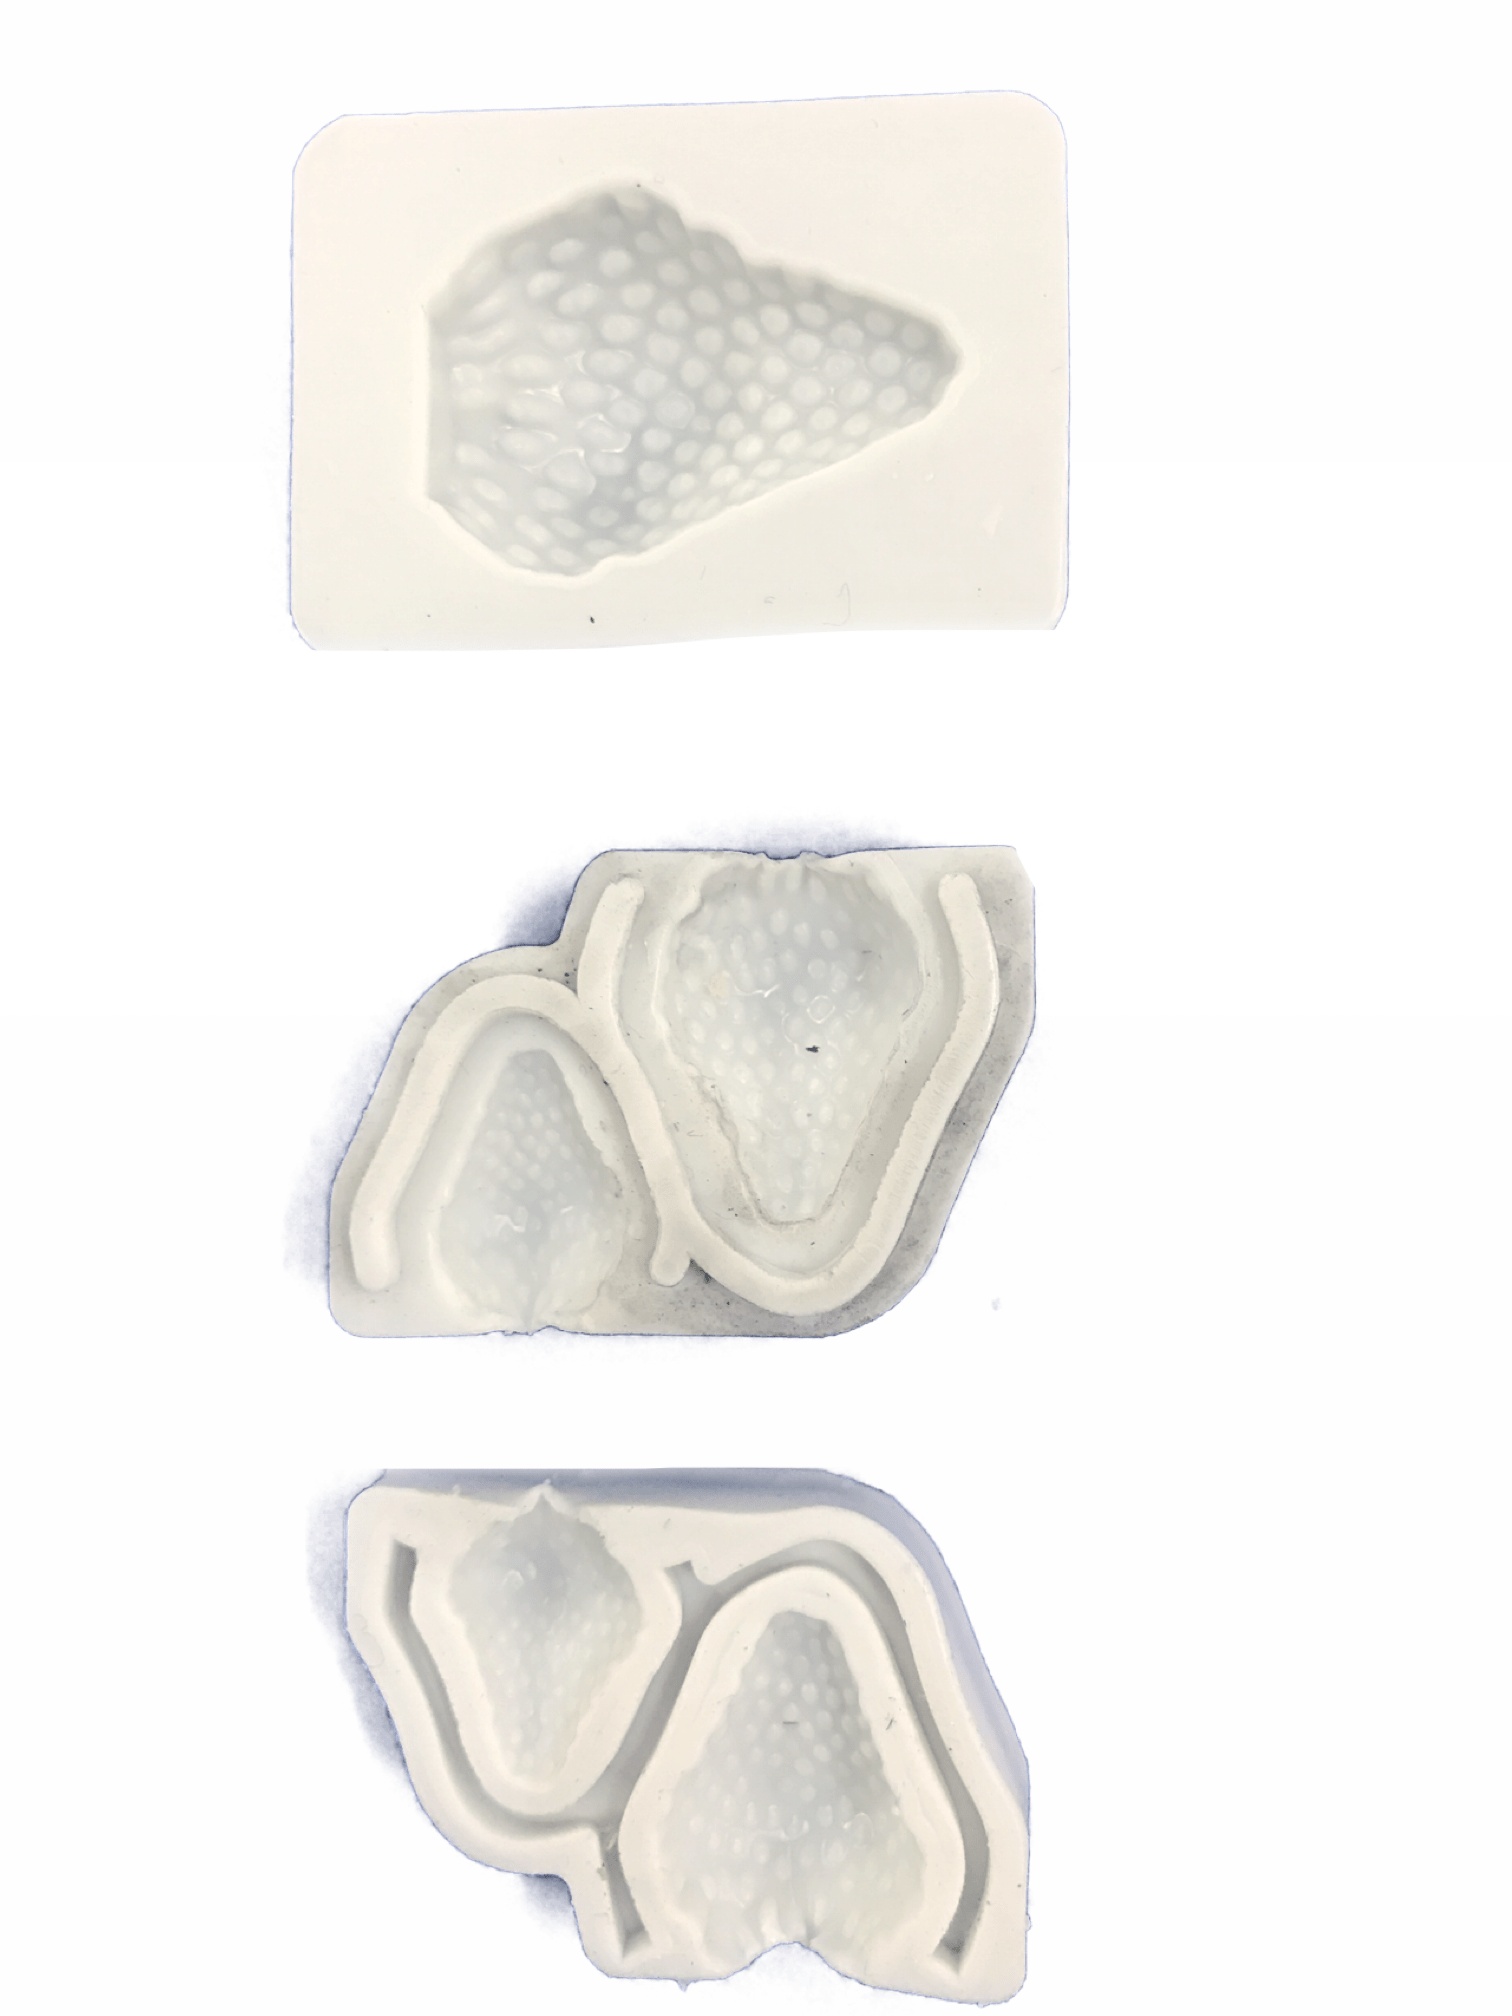 Molde de silicone em formato de Morango.